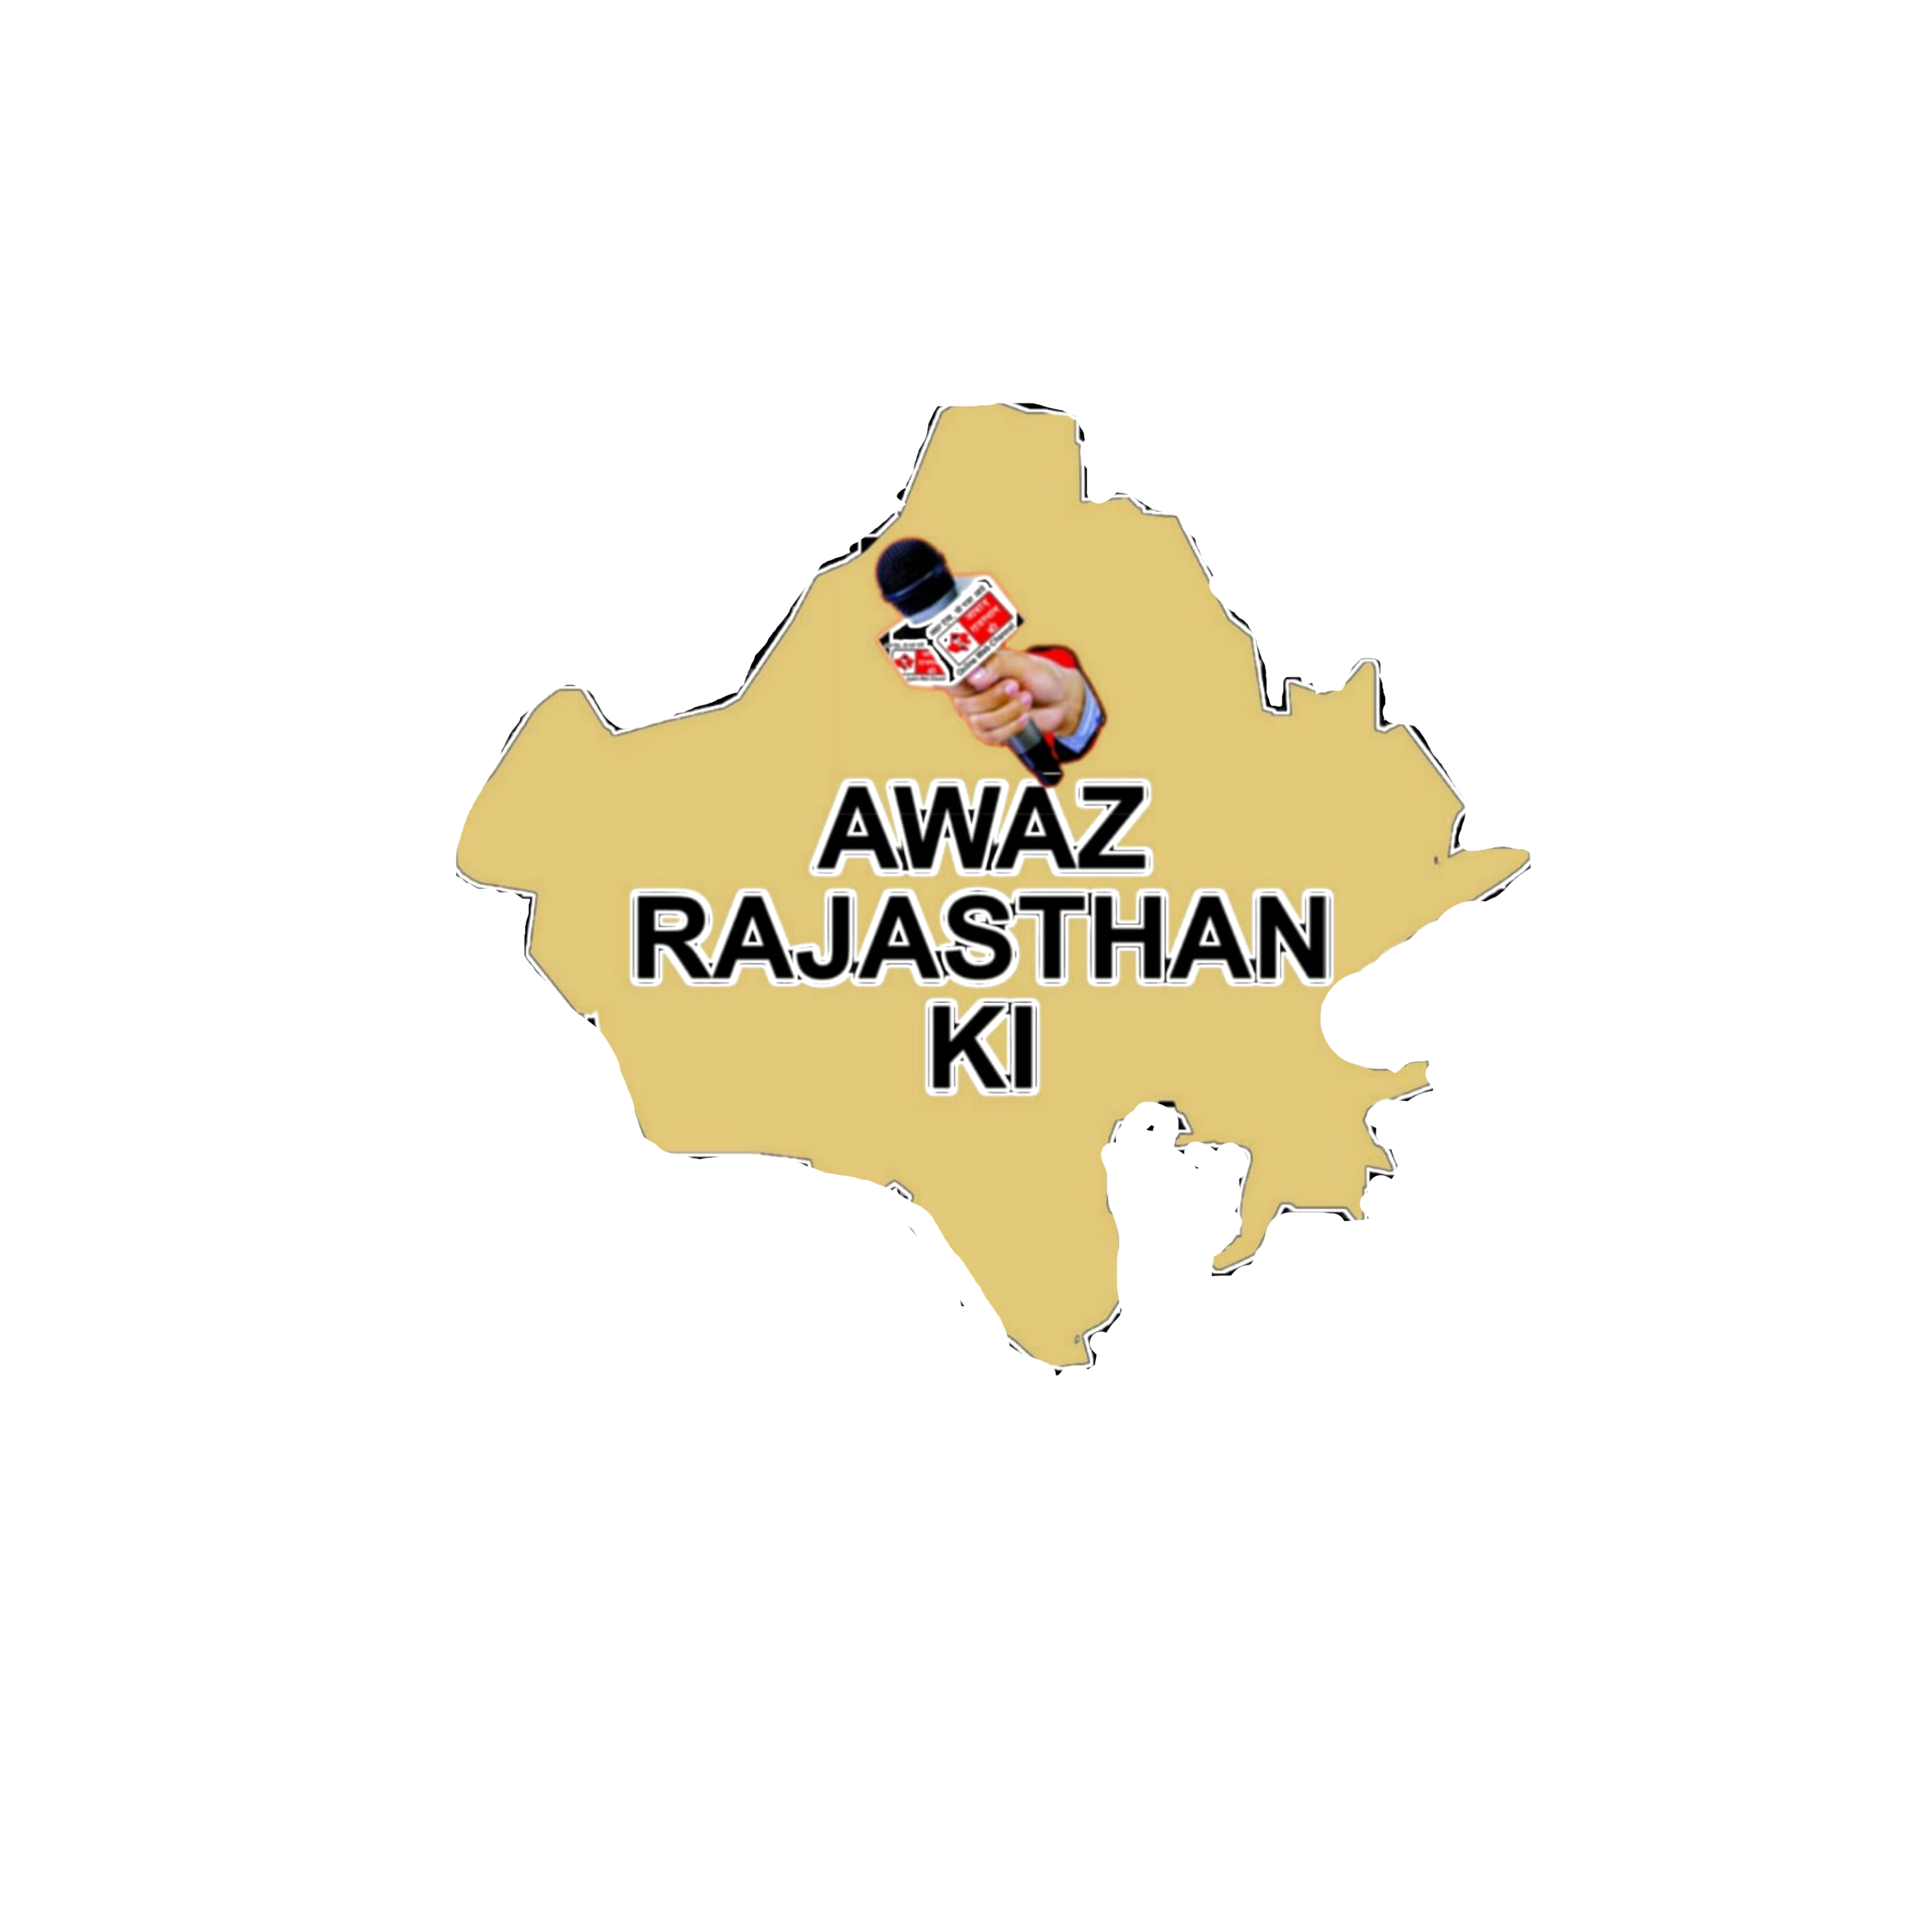 राजस्थान ग्राम विकास अधिकारी संघ के निर्देश पर आज सभी ग्राम विकास अधिकारी